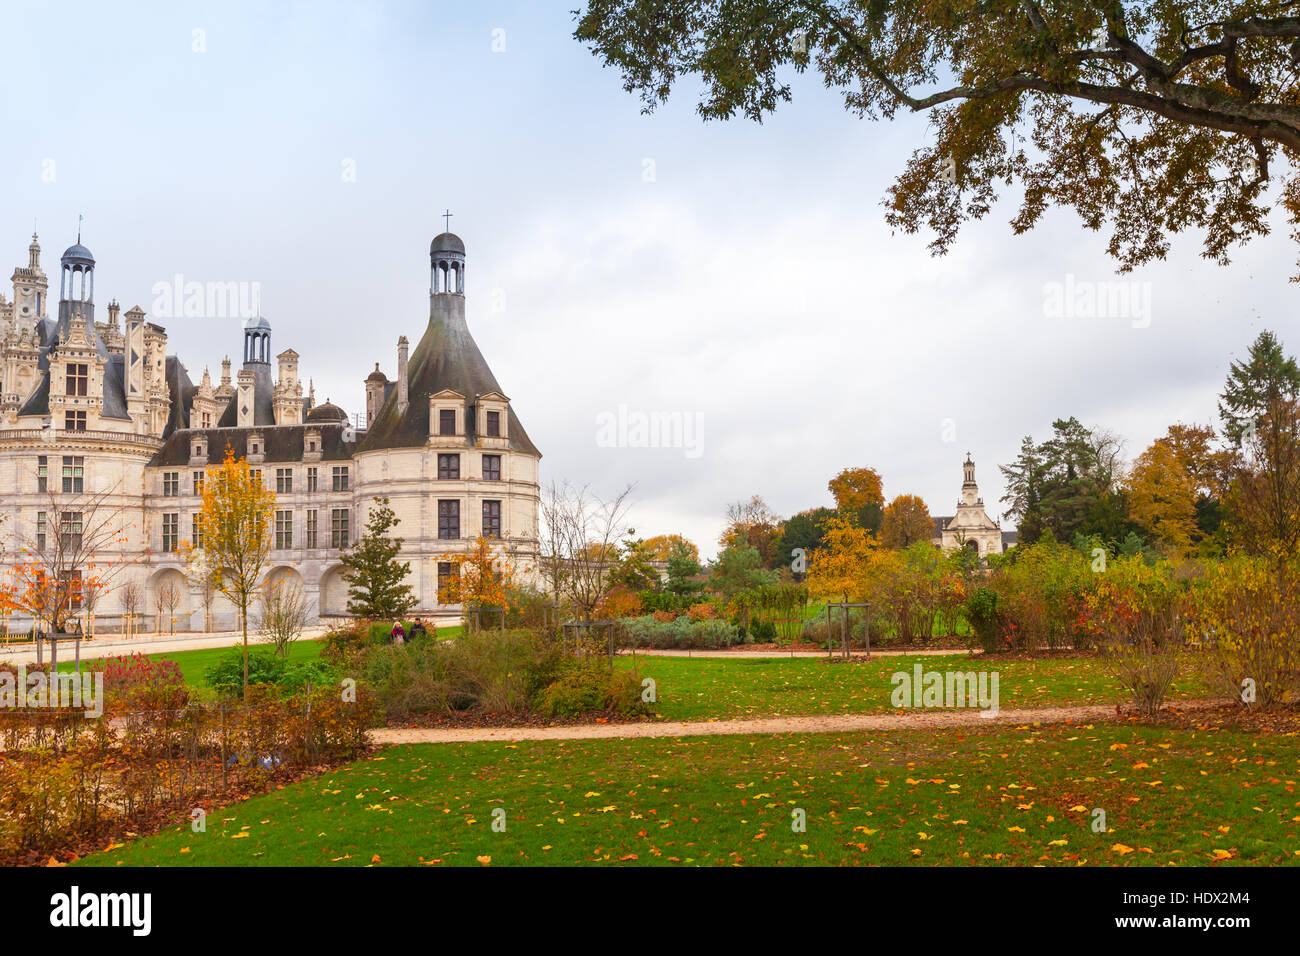 Chambord, Francia - 6 Novembre 2016: Chateau de Chambord, il castello medievale, la Valle della Loira. Uno dei più riconoscibili castello, Rinascimento francese archi Foto Stock